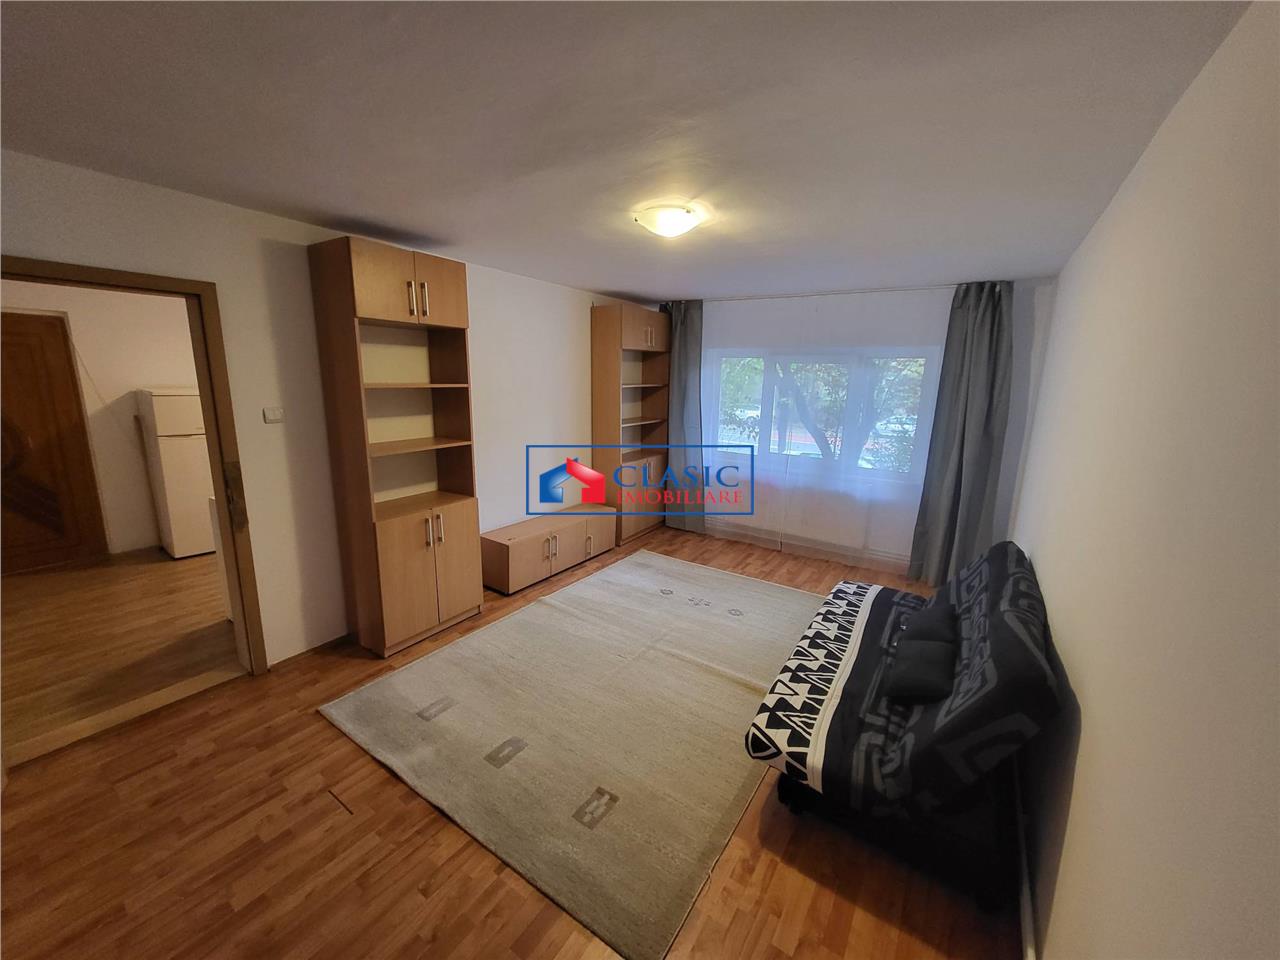 Inchiriere apartament 3 camere decomandate in Gheorgheni- zona Piata Cipariu